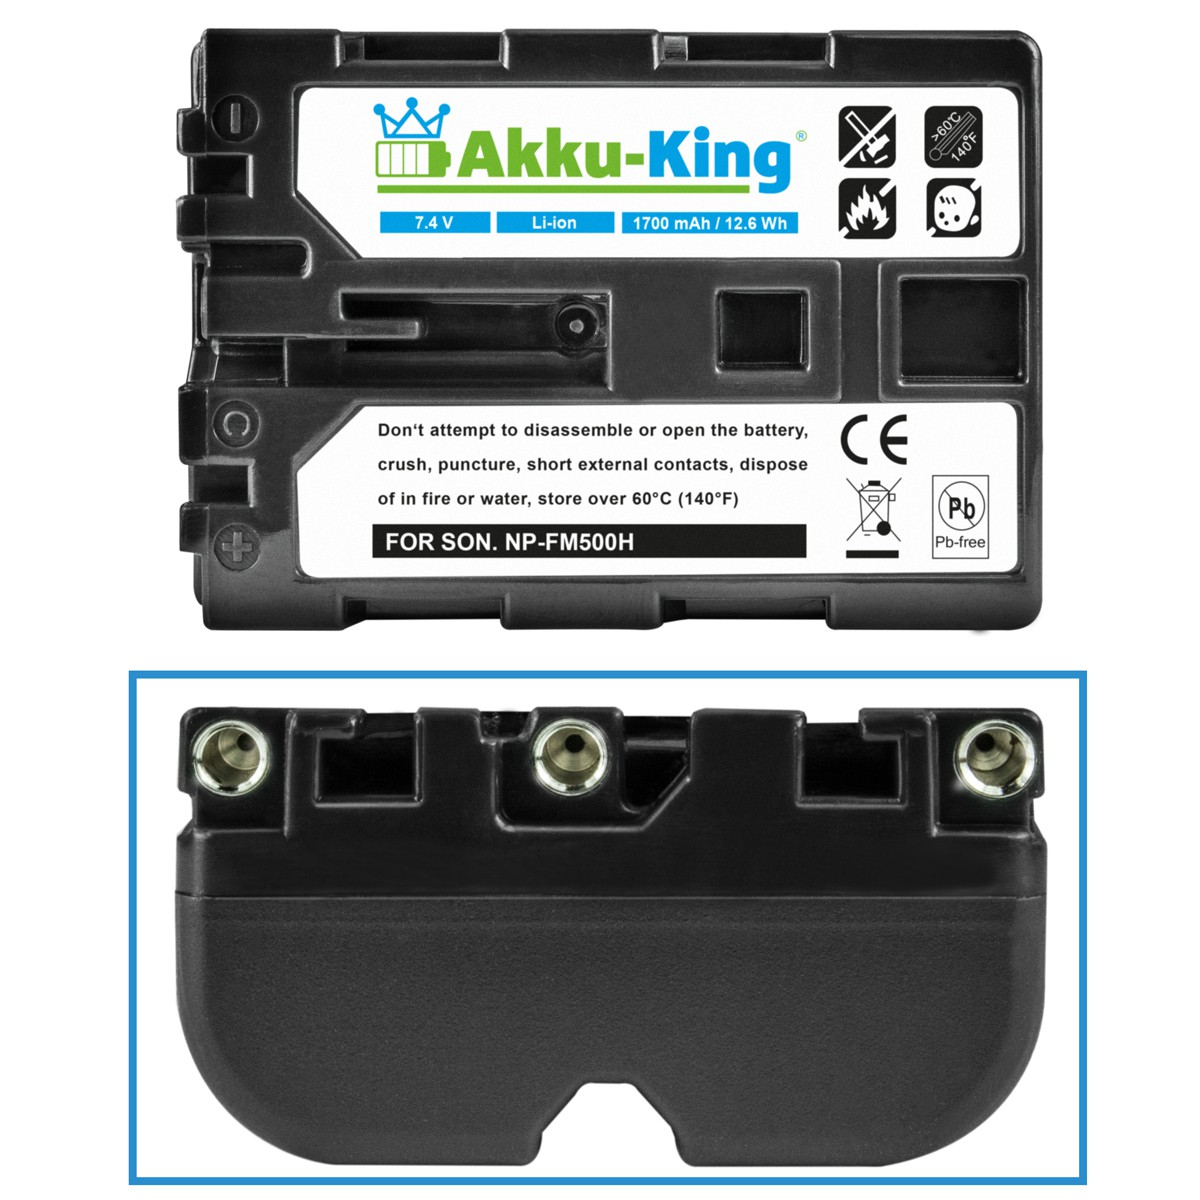 AKKU-KING Akku kompatibel mit Sony Kamera-Akku, 7.4 NP-FM500H 1700mAh Volt, Li-Ion